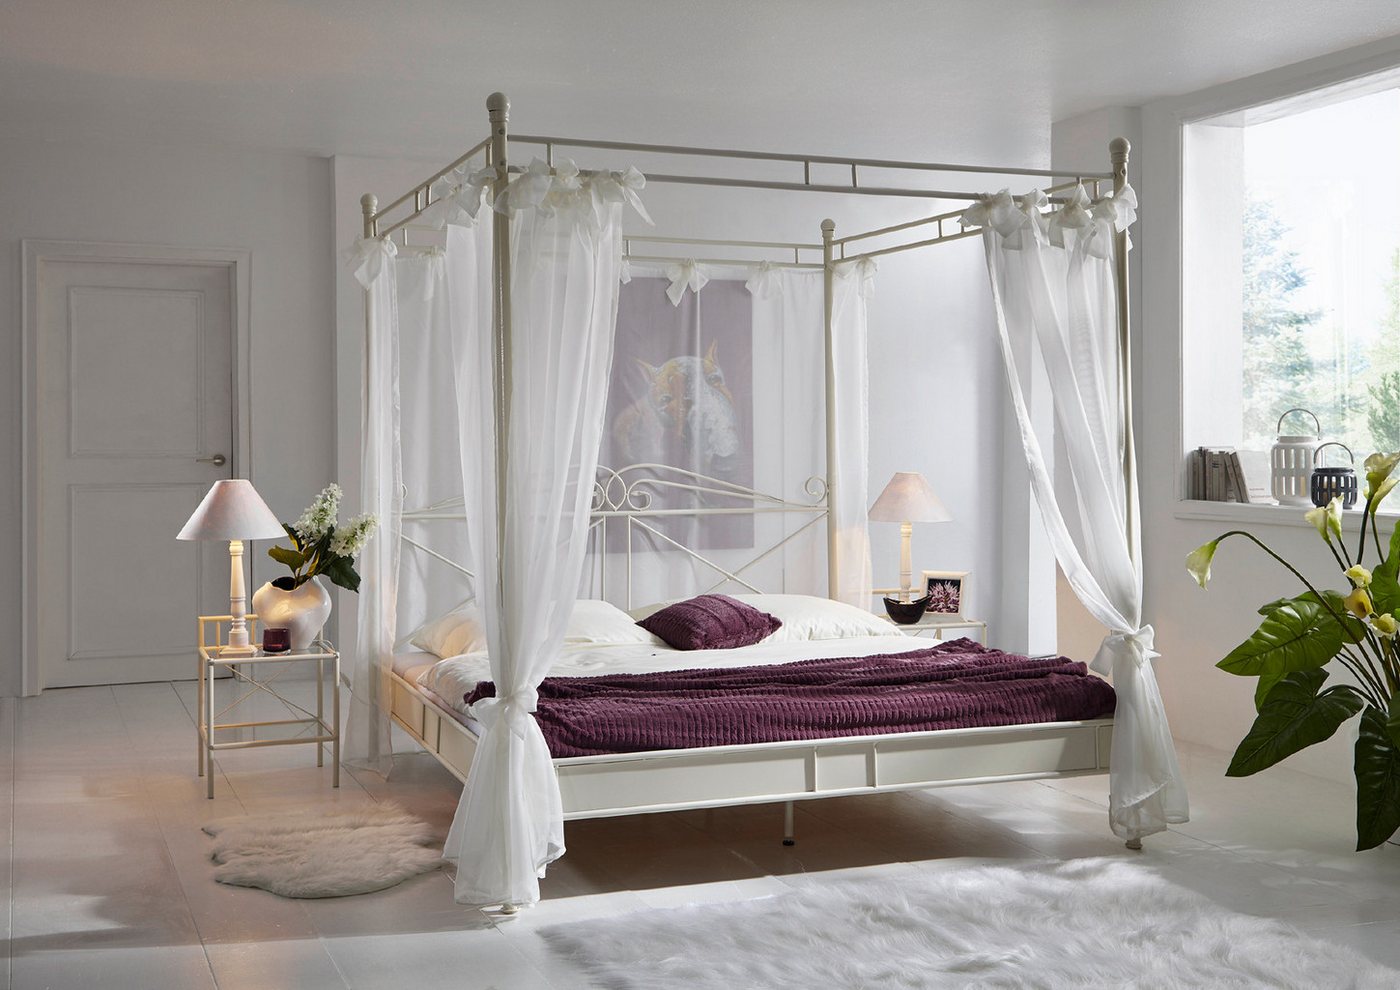 Junado® Himmelbett Venezia, Doppelbett, mit Vorhang, nostalgisches Flair, optimaler Liegekomfort von Junado®